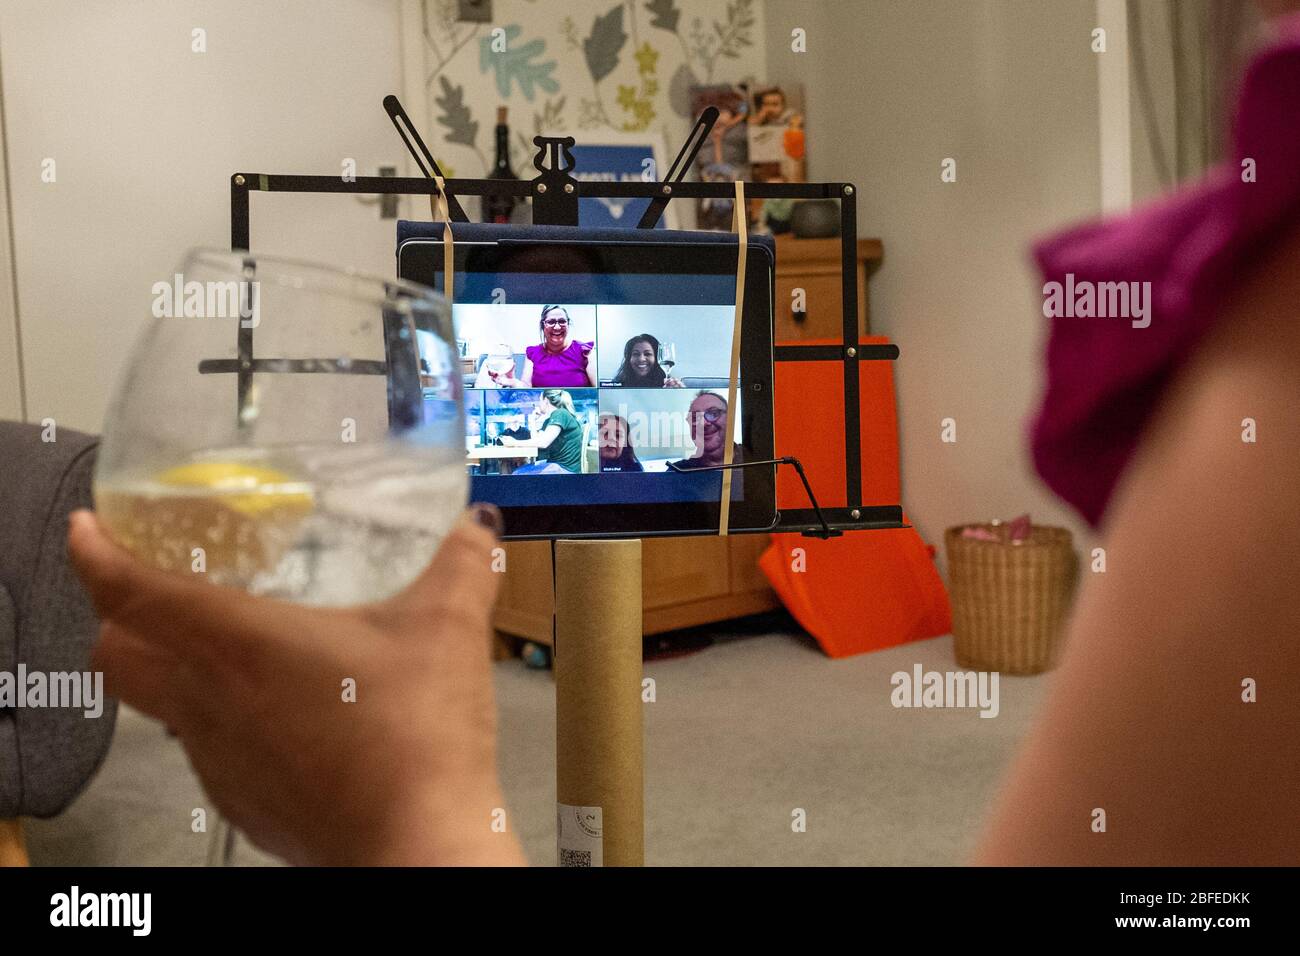 Une femme d'âge moyen est assise dans sa maison à boire de l'alcool, en parlant à des amis par le biais de la vidéo télécommunication Zoom pendant la pandémie de Coronavirus au Royaume-Uni Banque D'Images